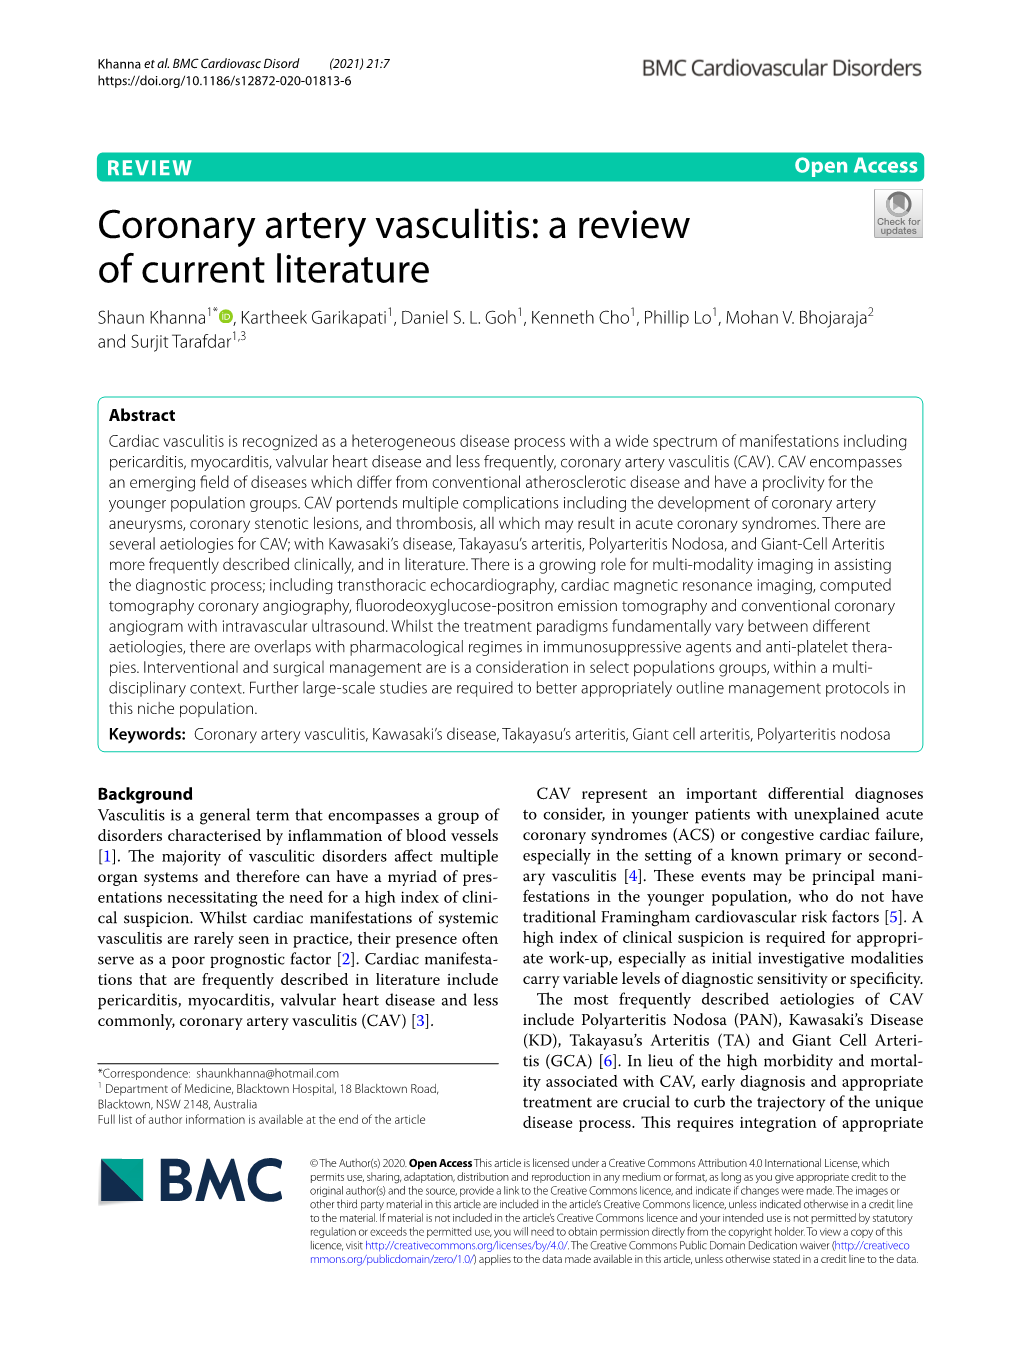 Coronary Artery Vasculitis: a Review of Current Literature Shaun Khanna1* , Kartheek Garikapati1, Daniel S